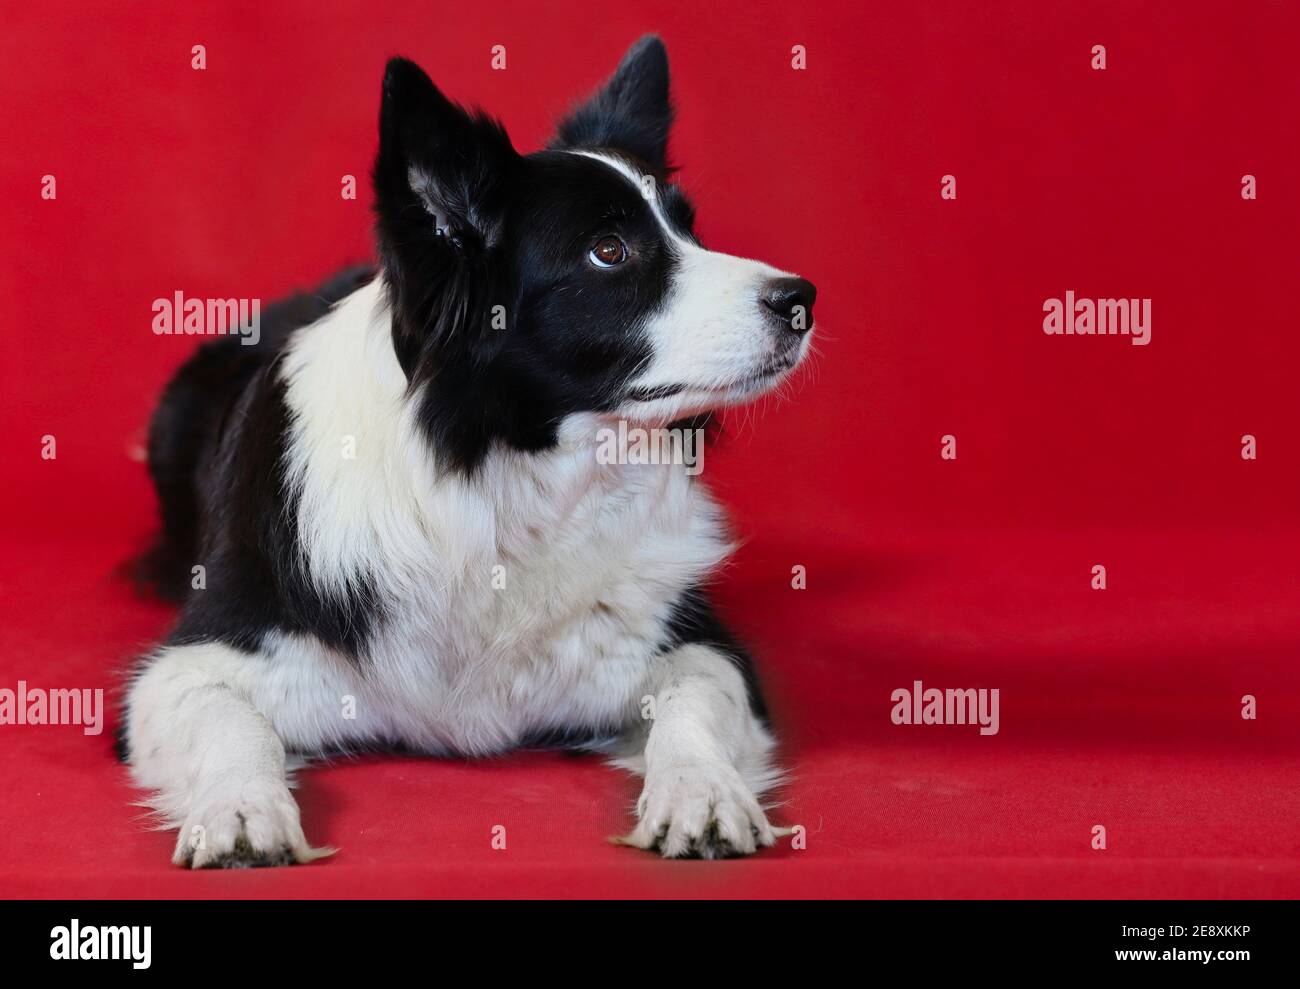 Ling Border Collie isolato su sfondo rosso. Carino cane bianco e nero guarda al lato. Foto Stock